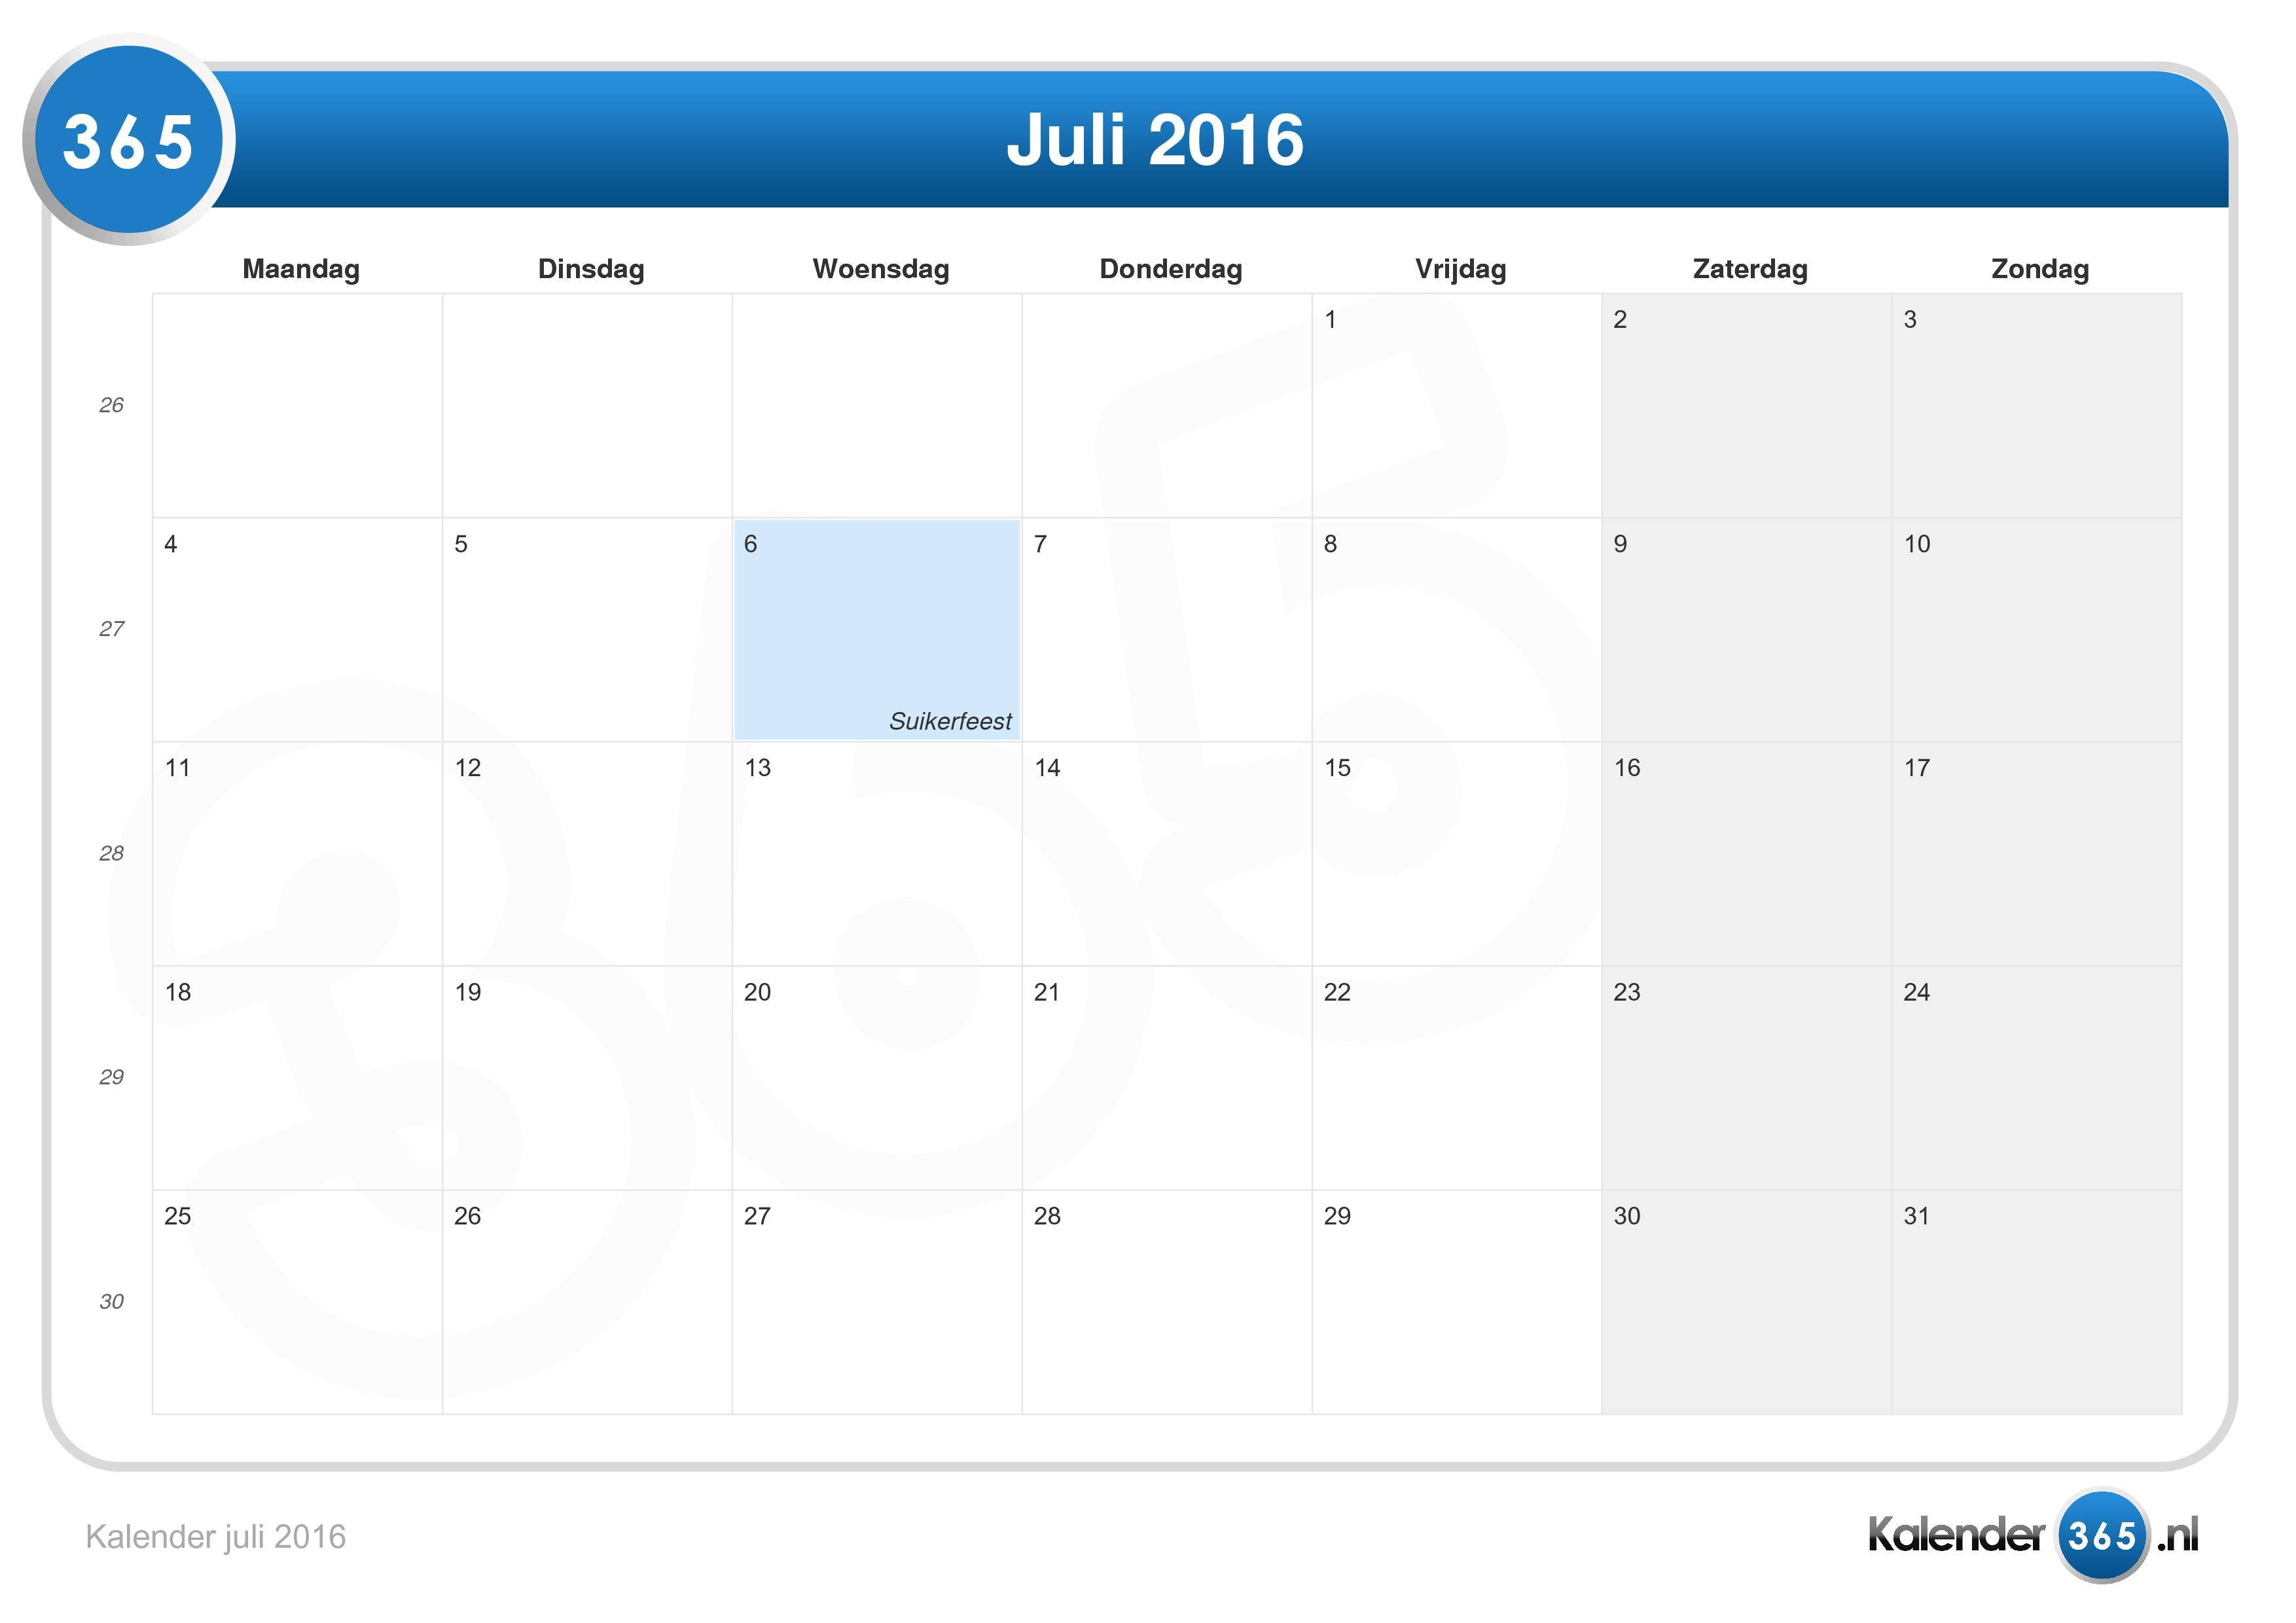 Handel Kwaadaardig Heel veel goeds Kalender juli 2016